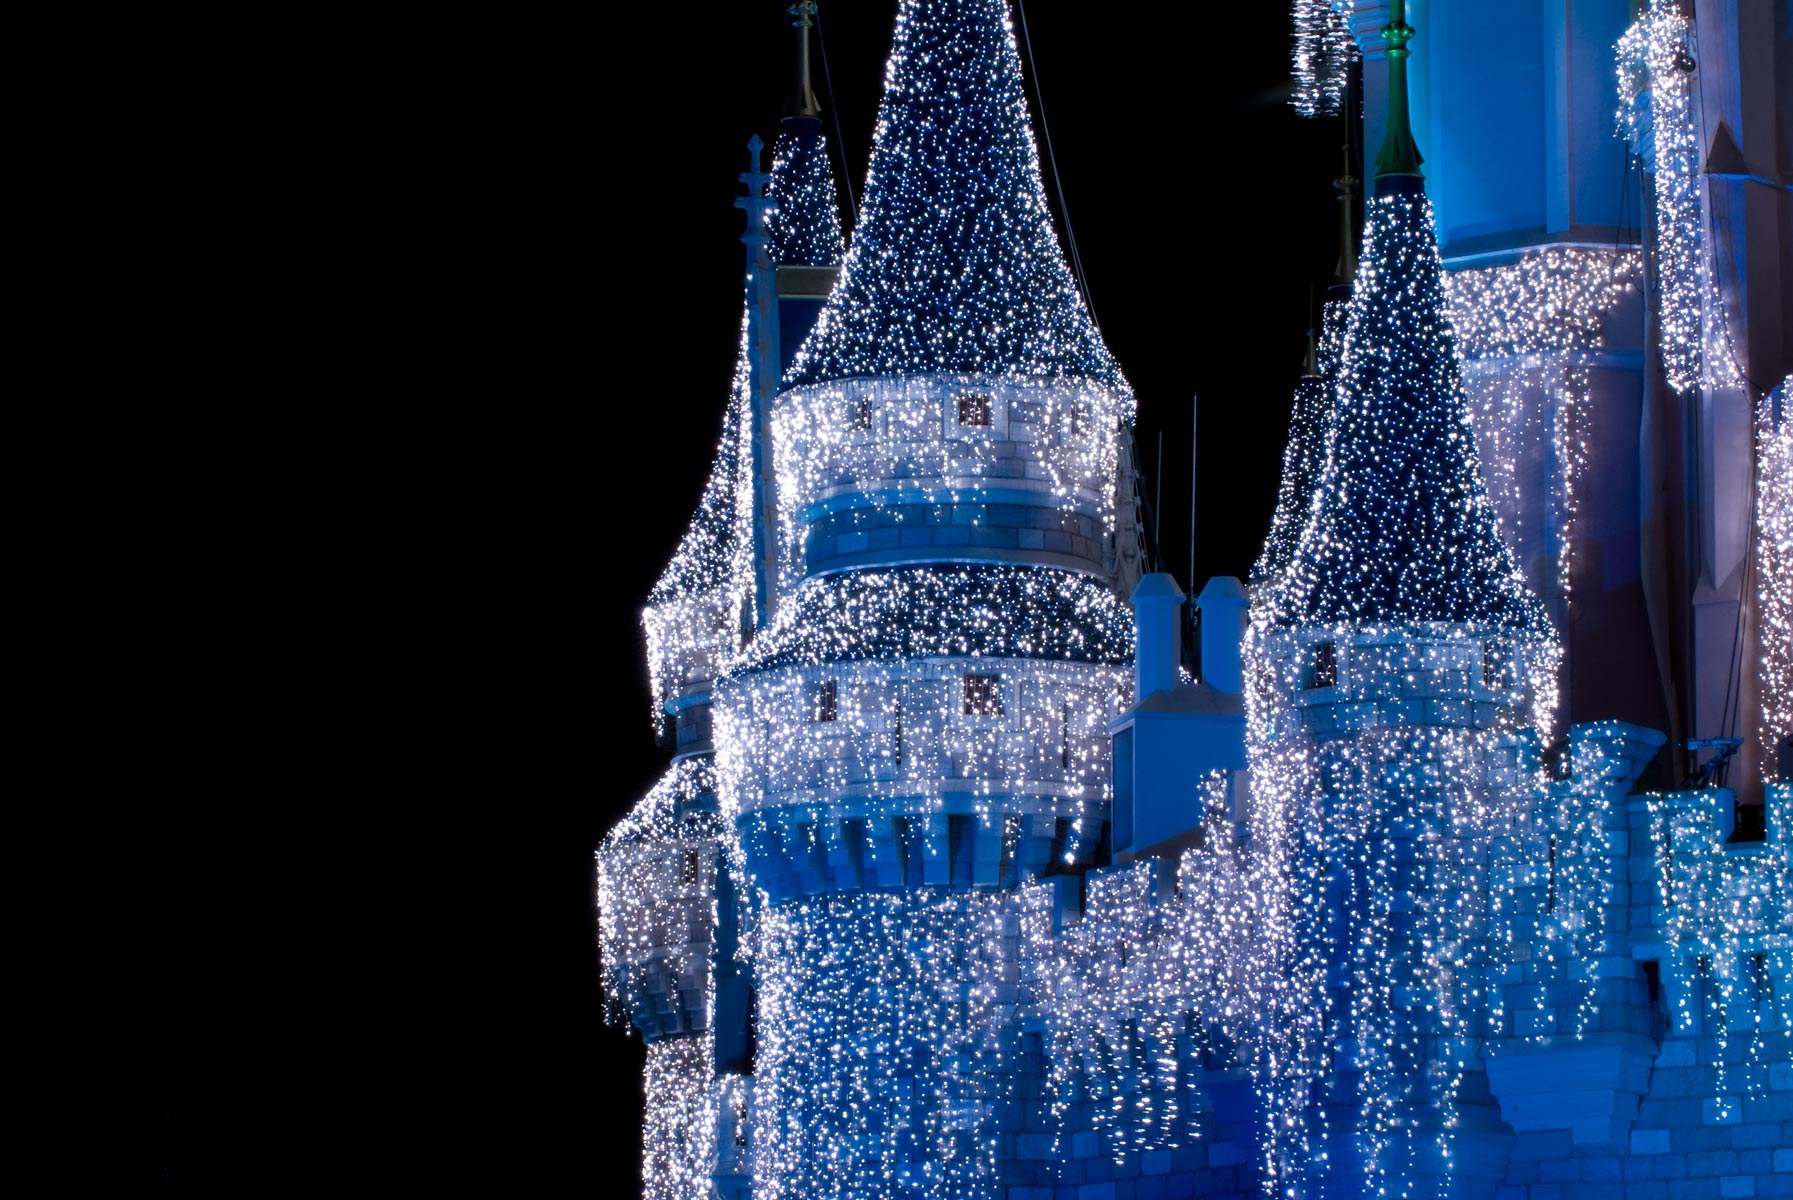 Disney Castle Background Wallpaper HD